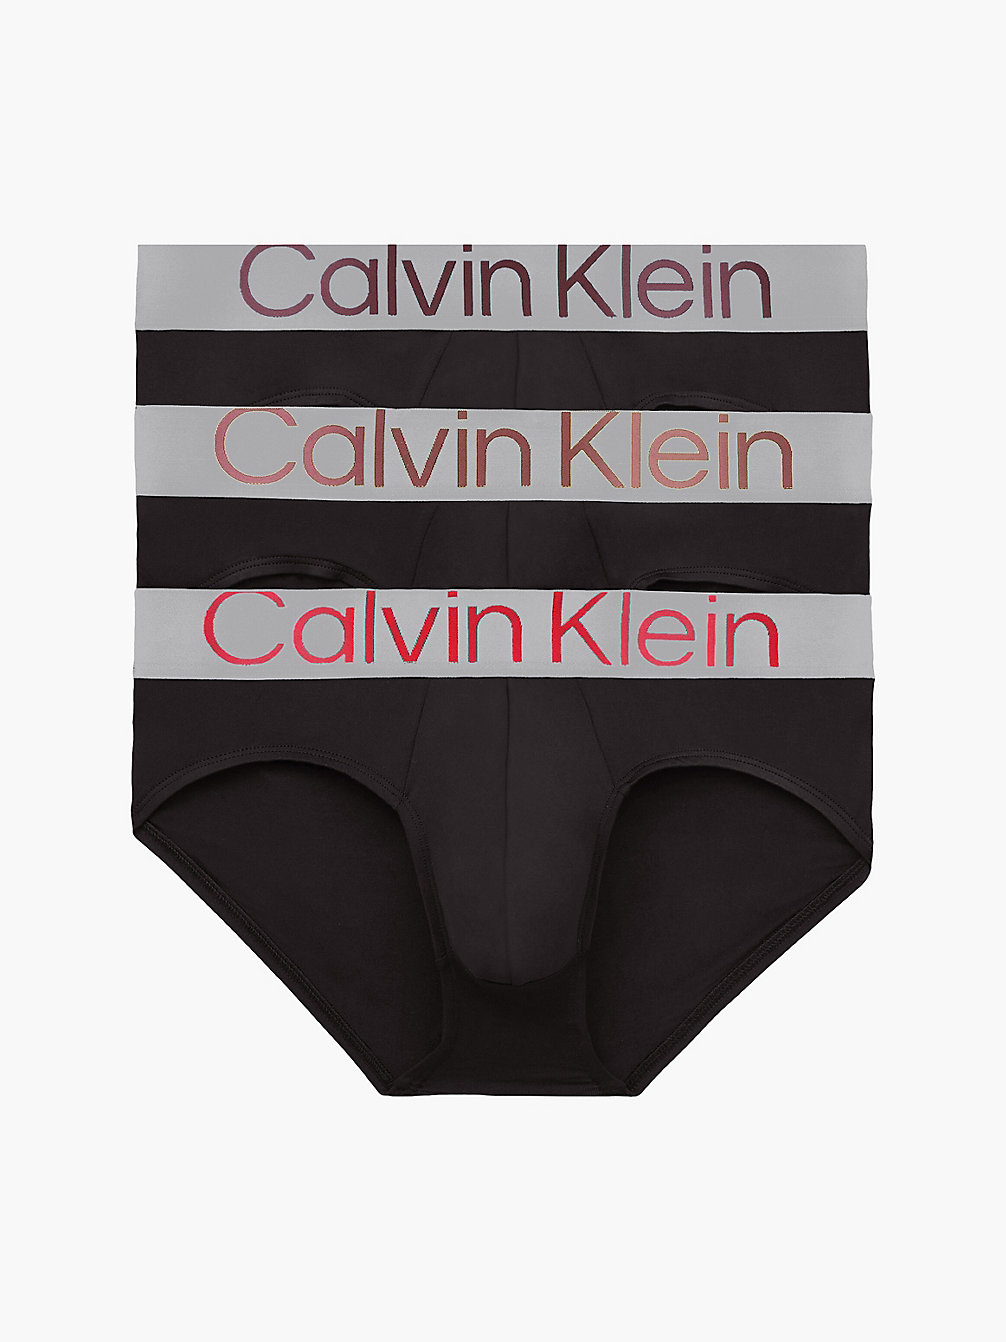 B-ORNG ODSY/ DUSTY CPPR/ RHONE LOGO Lot De 3 Slips - Steel Micro undefined hommes Calvin Klein